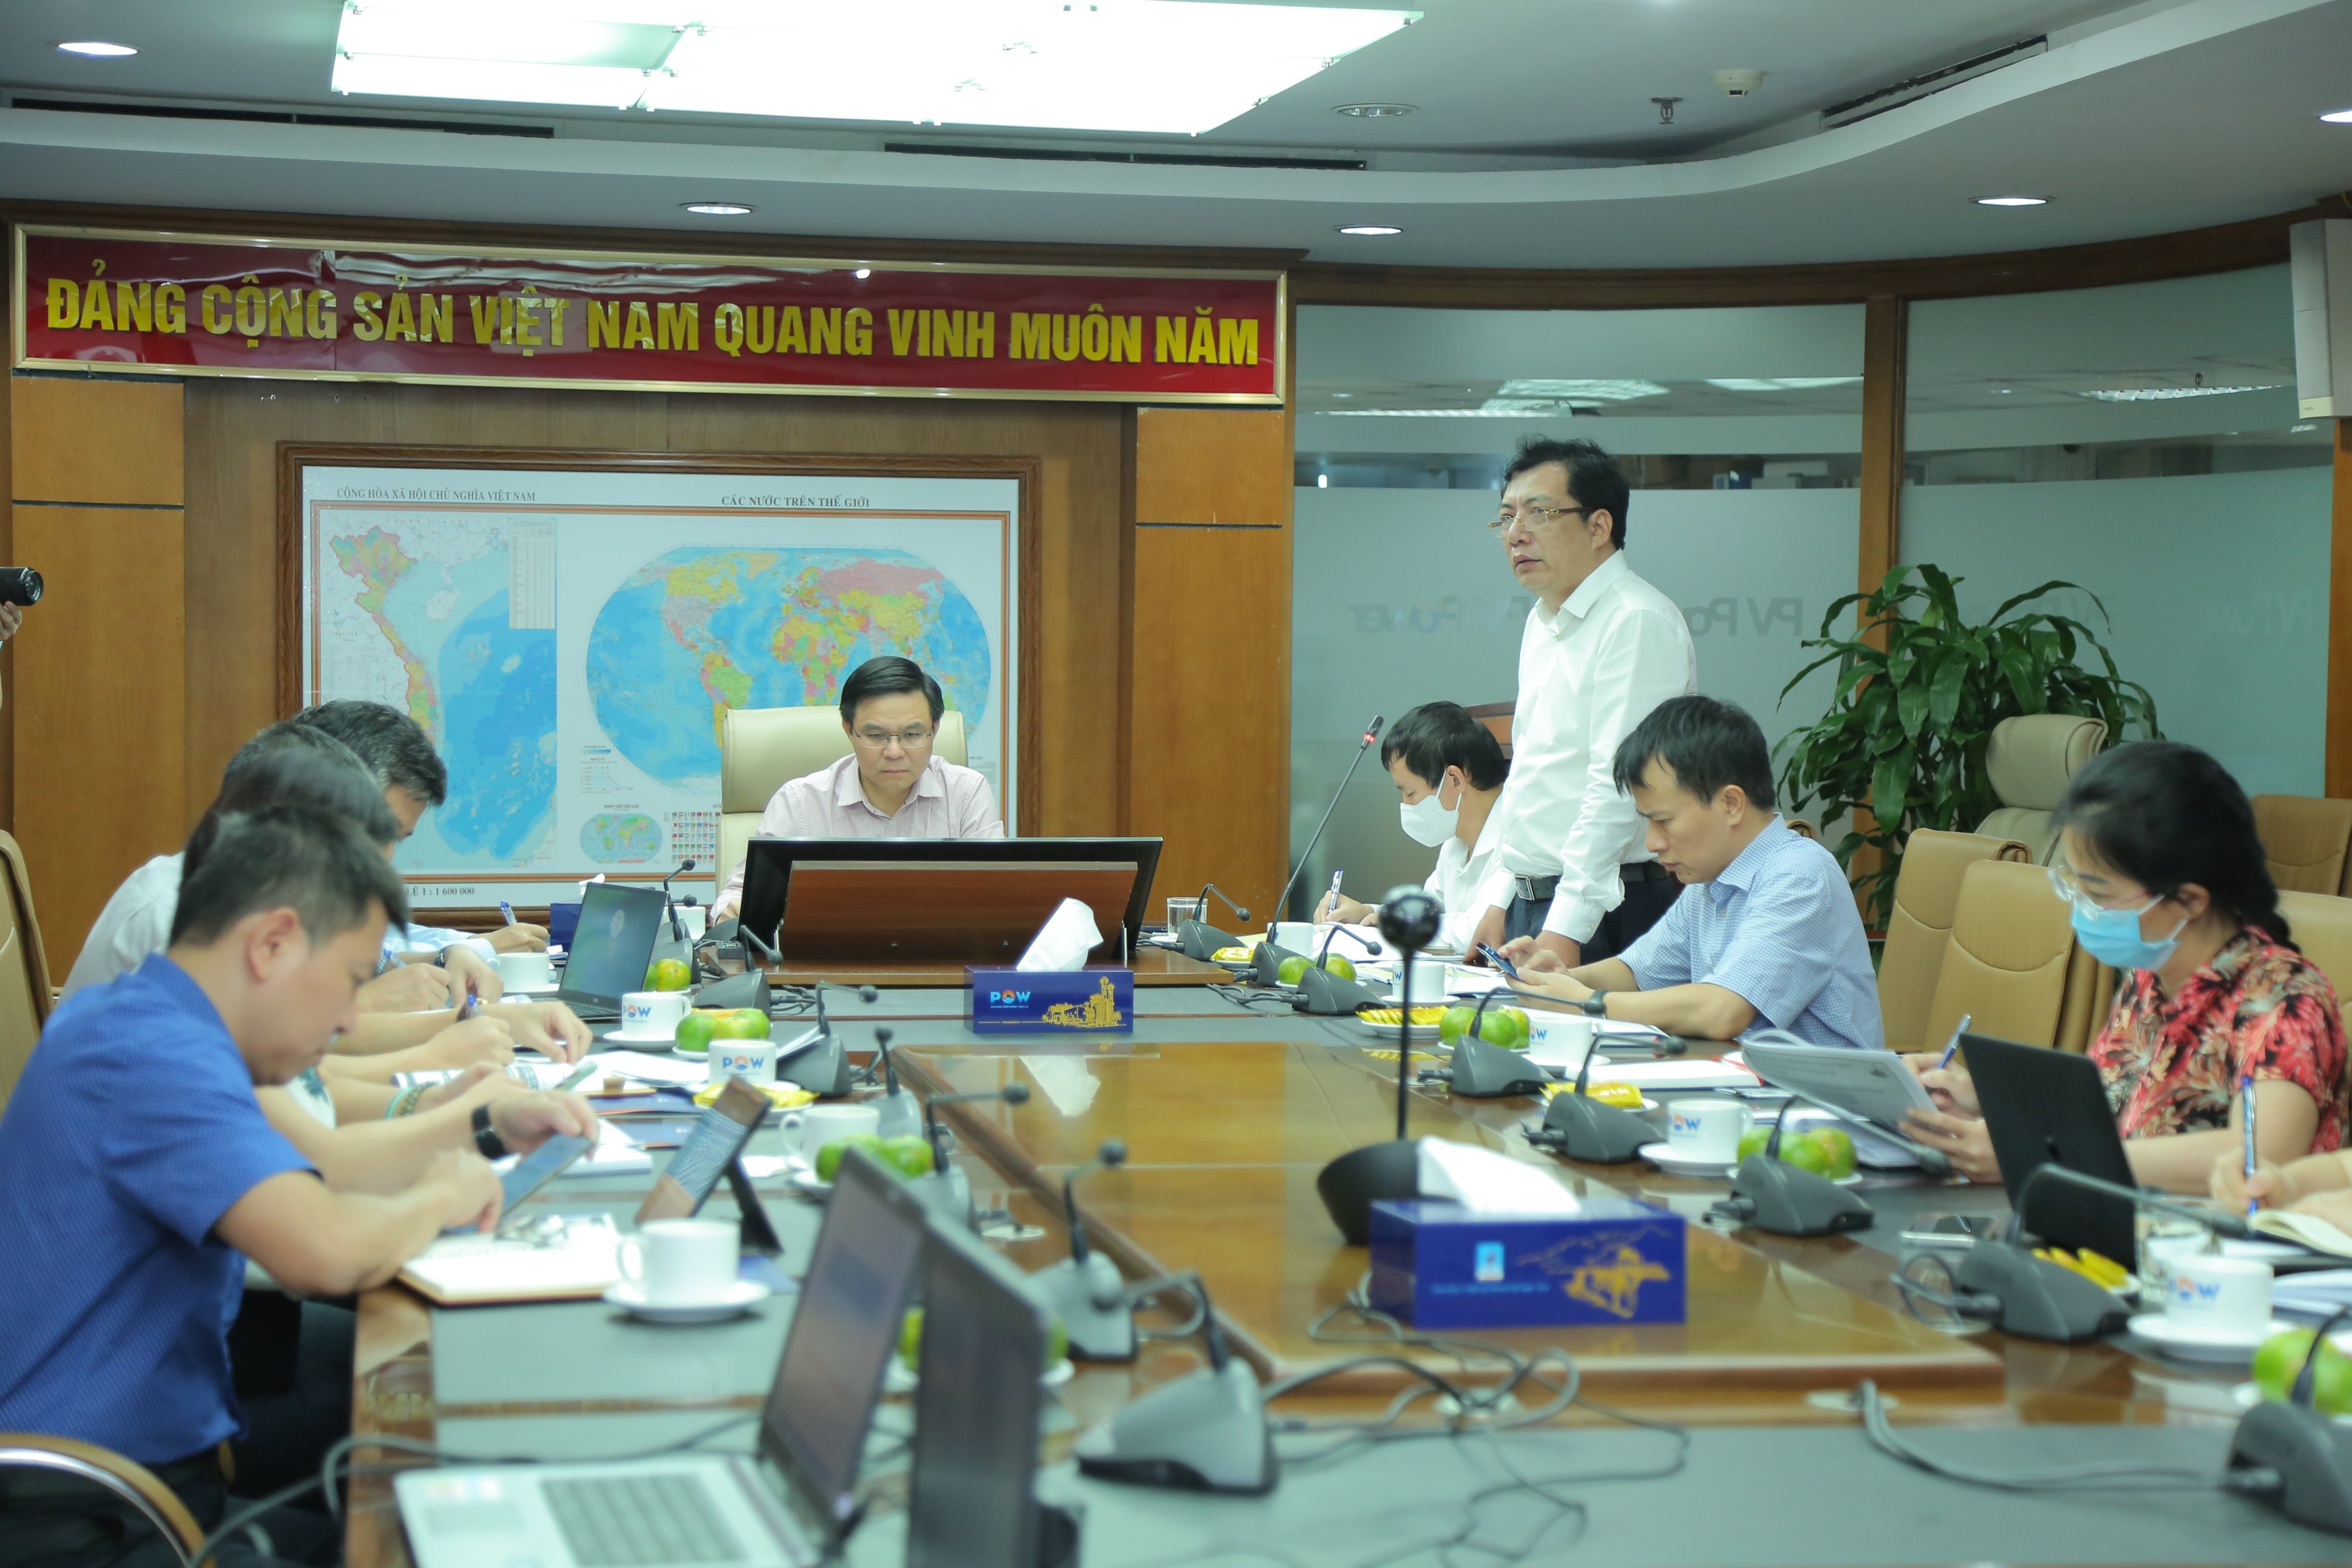  Tổng Giám đốc Lê Như Linh báo cáo tại buổi làm việc